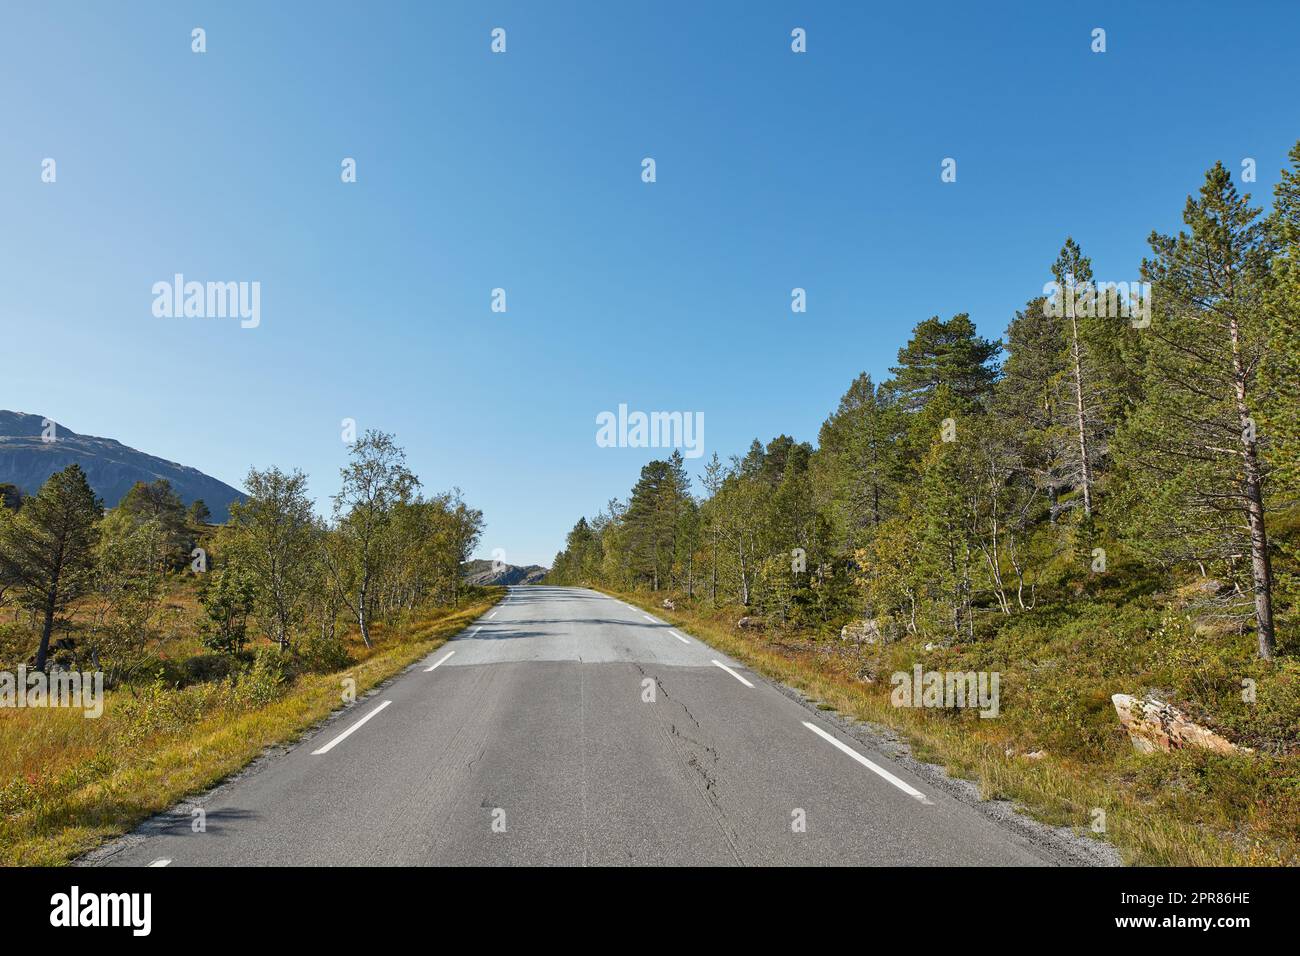 Une route vide entourée d'arbres avec ciel bleu clair et espace de copie. Paysage avec une route asphaltée de campagne droite pour voyager le long d'une belle forêt pittoresque en Norvège Banque D'Images